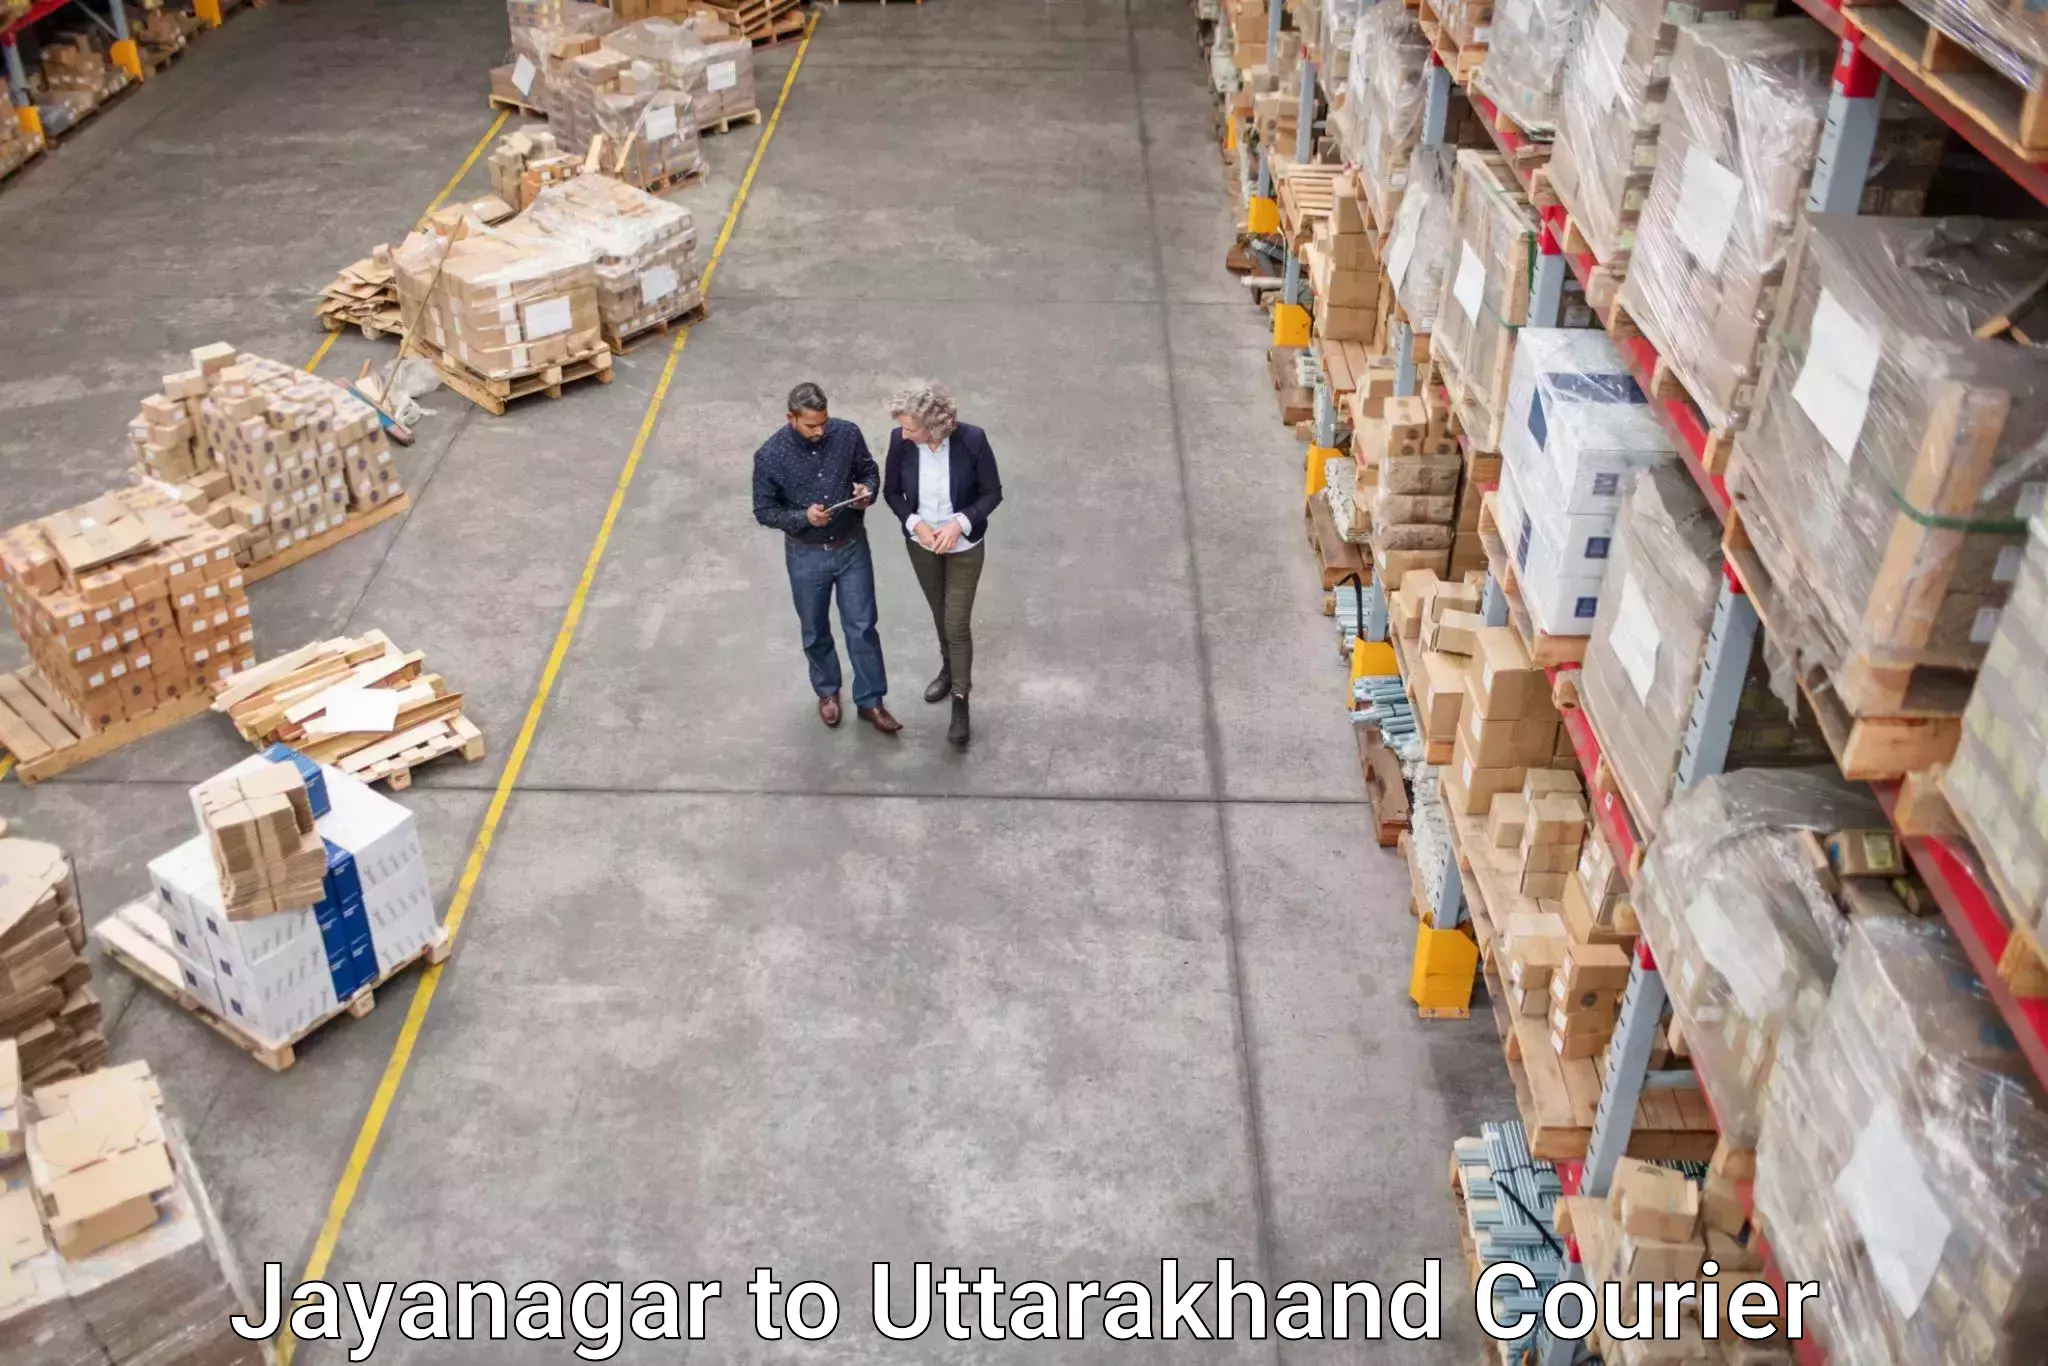 Courier app Jayanagar to Uttarakhand